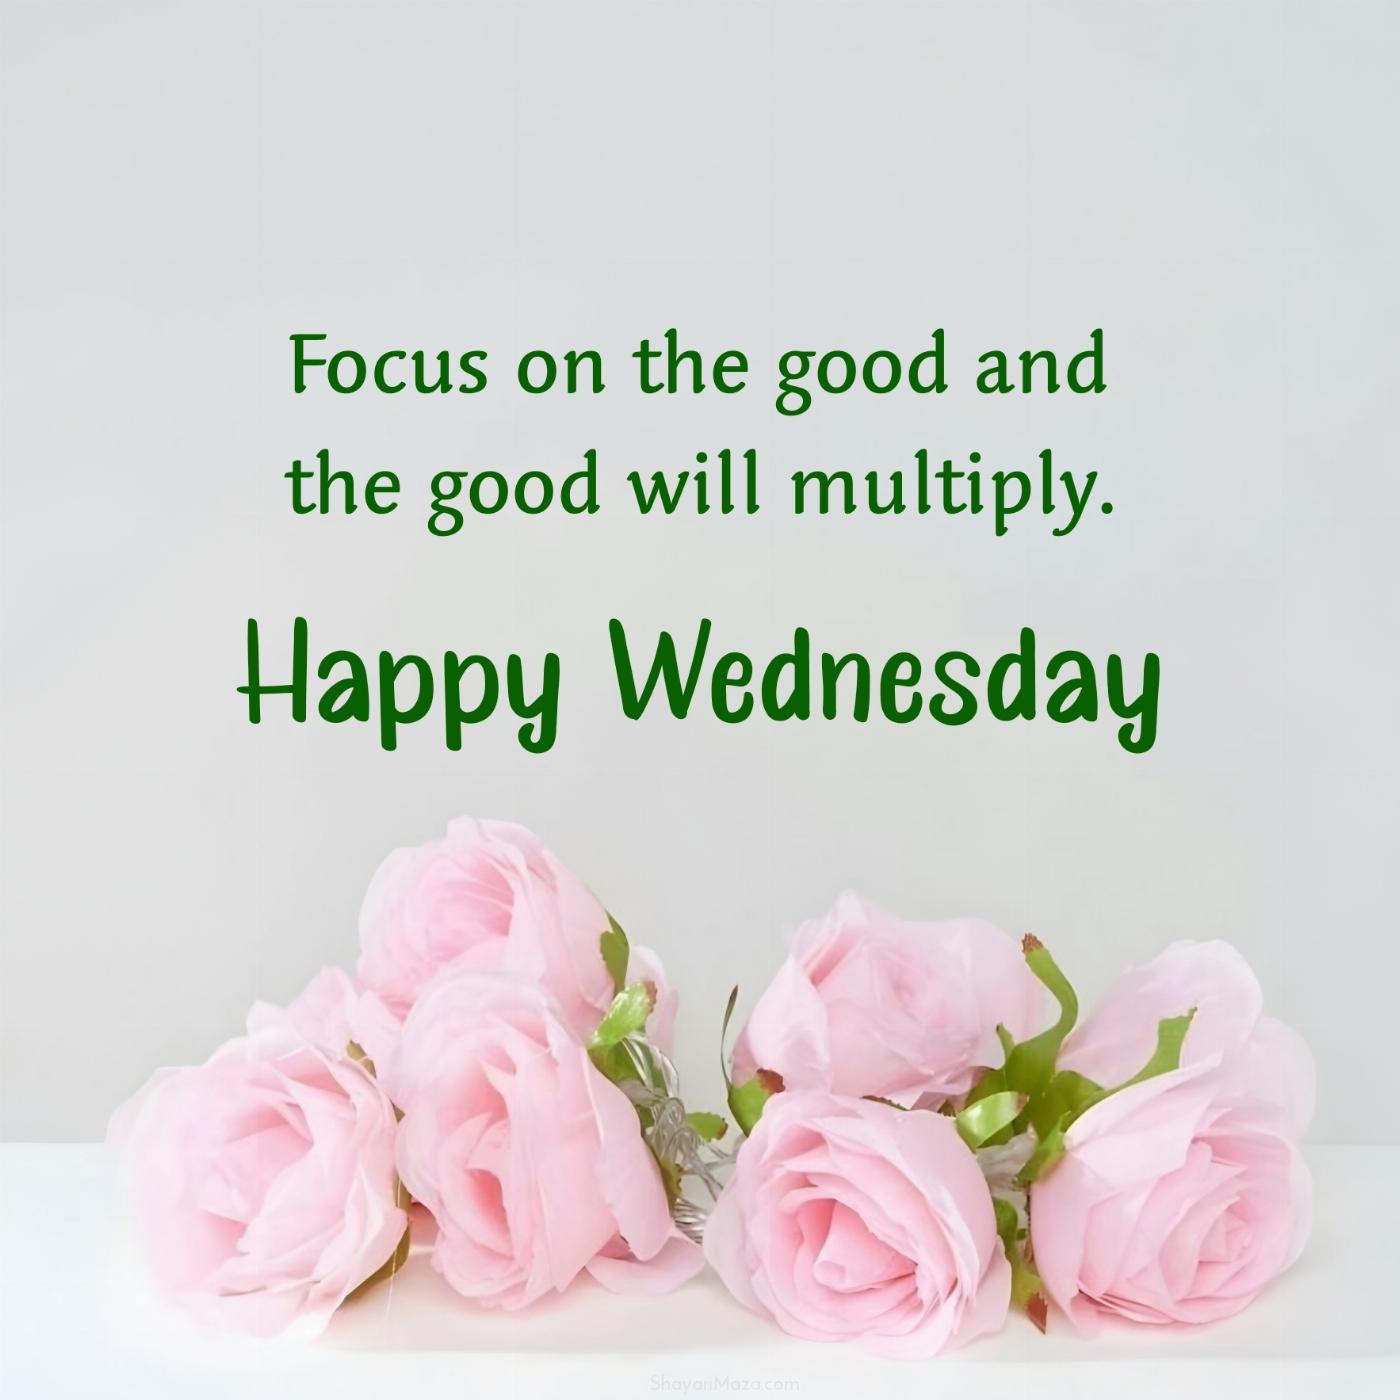 Happy Wednesday! Focus on the good